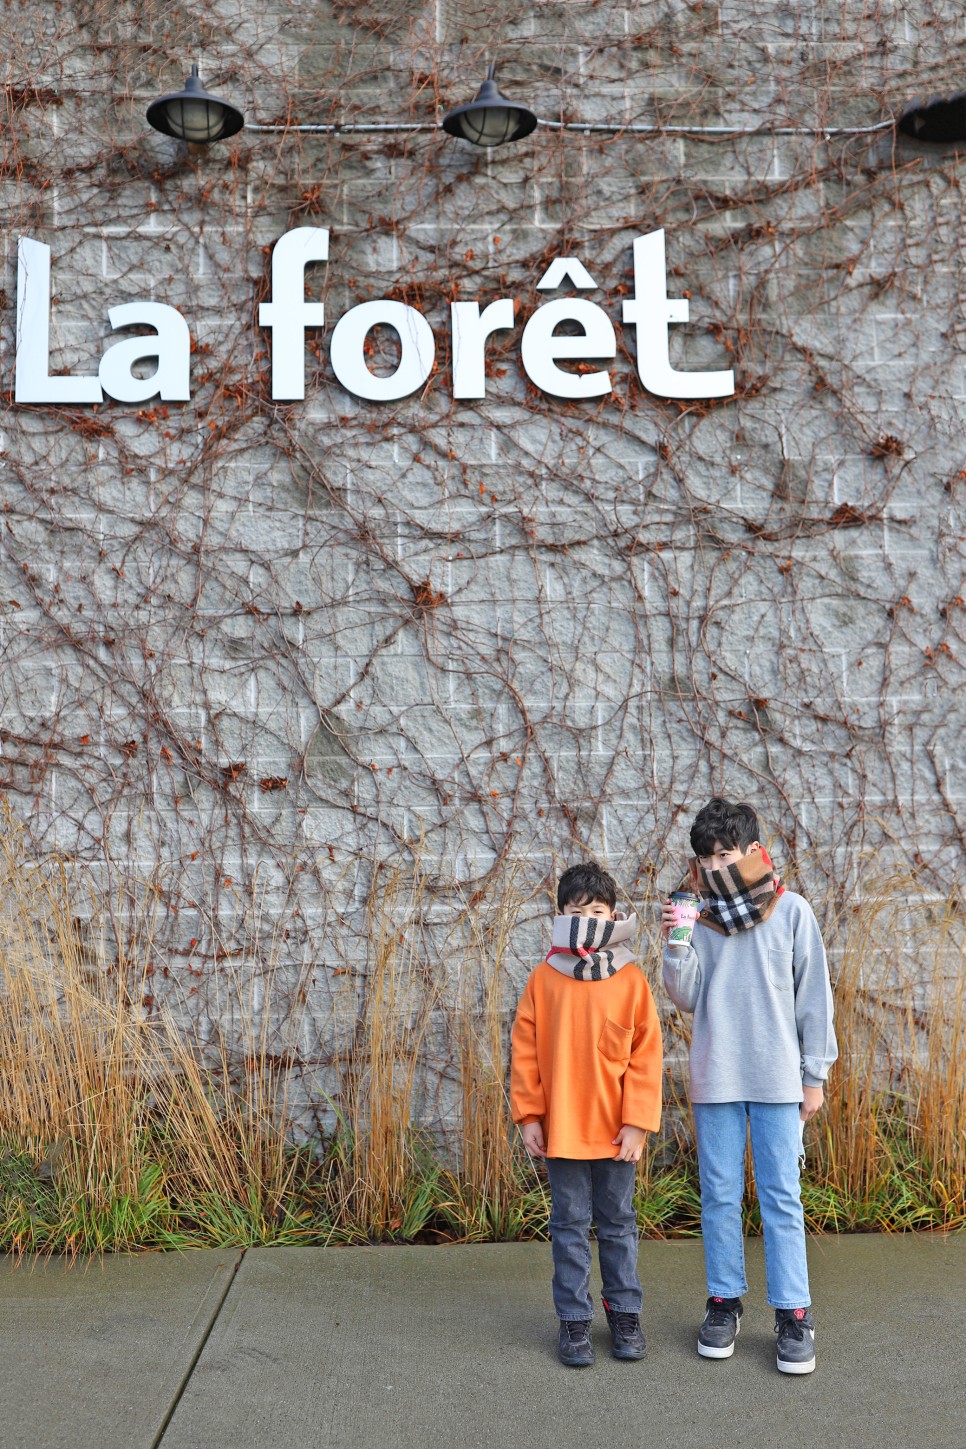 밴쿠버 맛집 버나비 초록초록 분위기 쵝오 베이커리 라포레 (La foret)